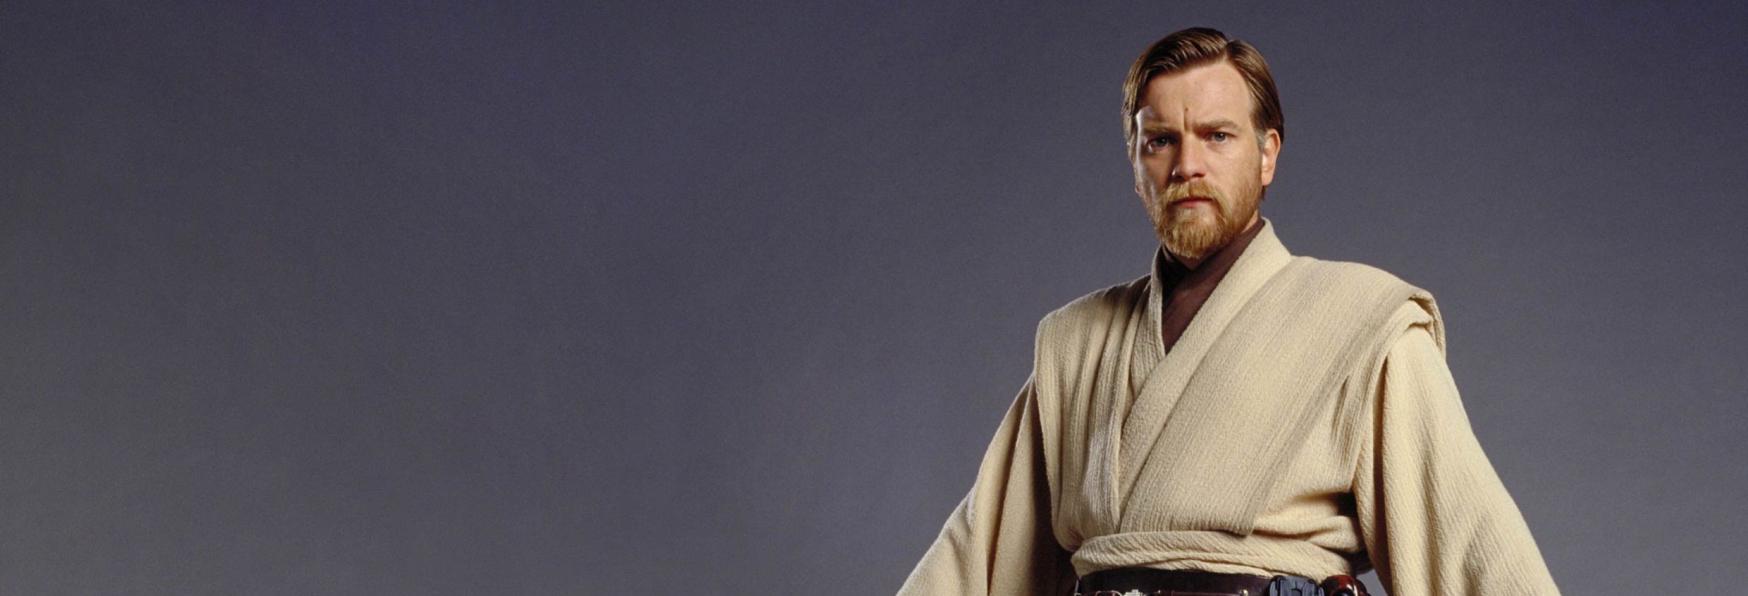 Obi-Wan Kenobi sarà Rilasciata a Maggio? Un Tweet potrebbe averlo Confermato per Errore